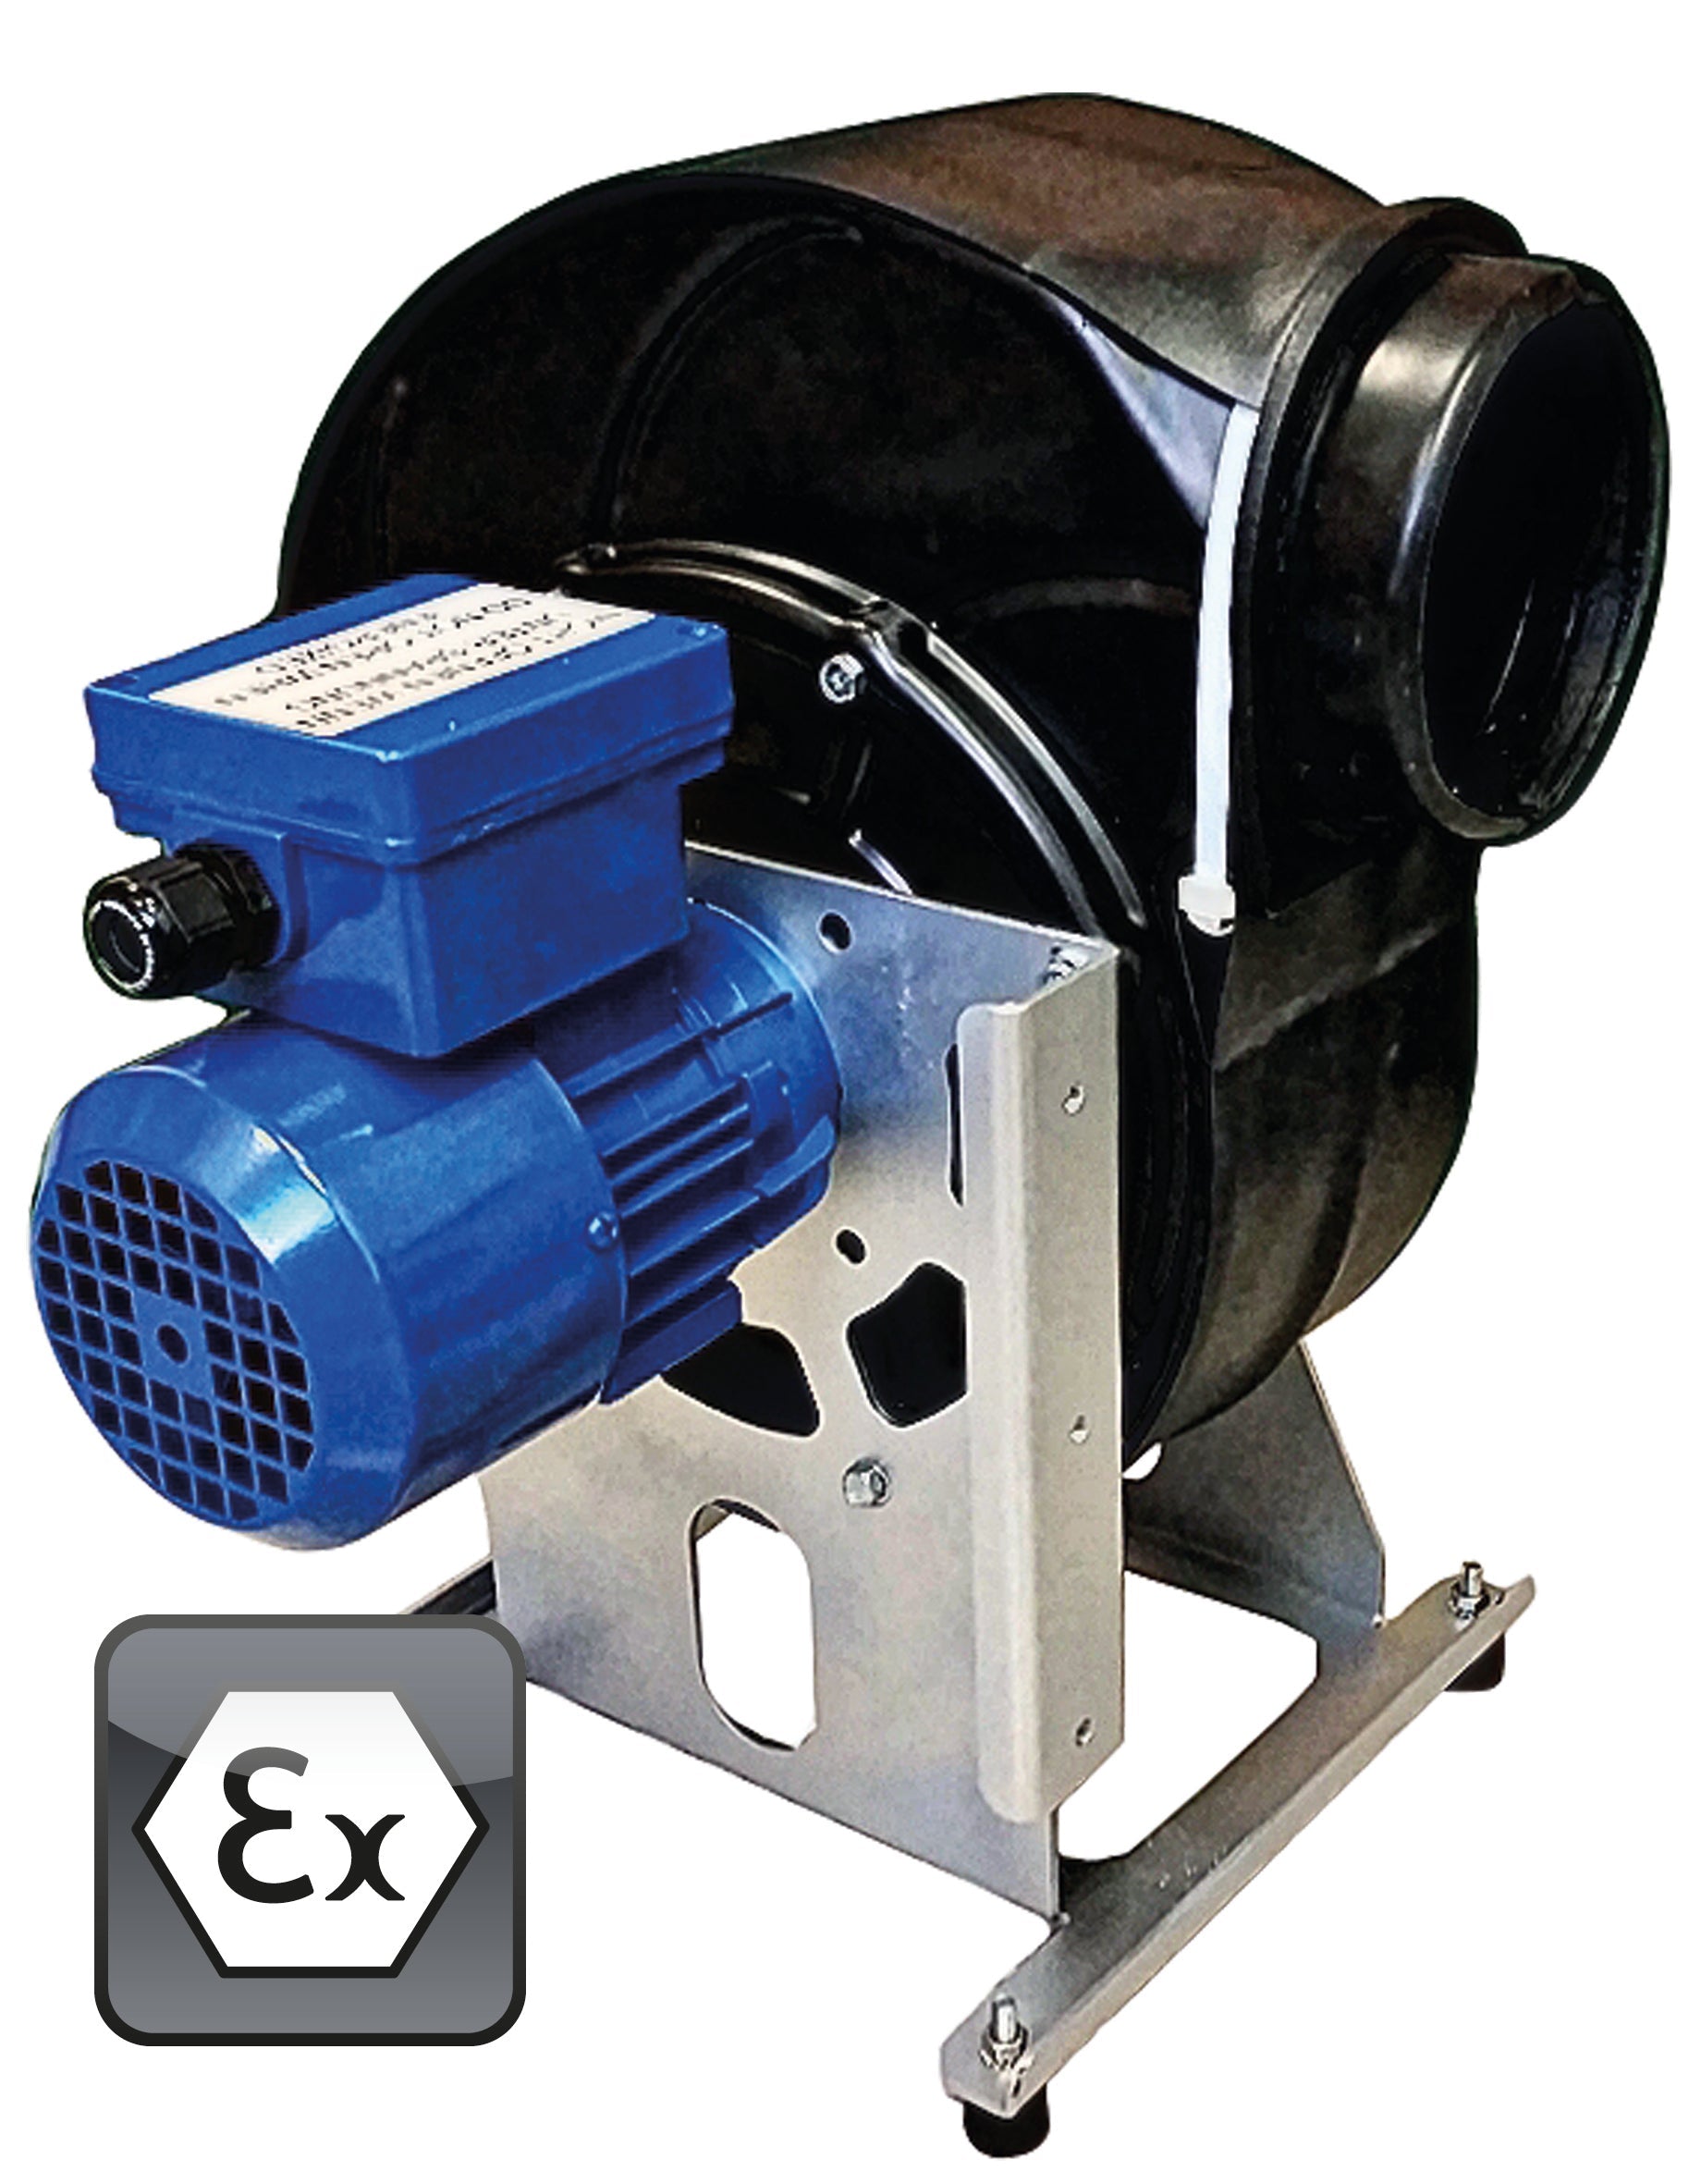 Ventilator Modell EP.VE.29427 für Gefahrstoffarbeitsplätze, Polypropylen